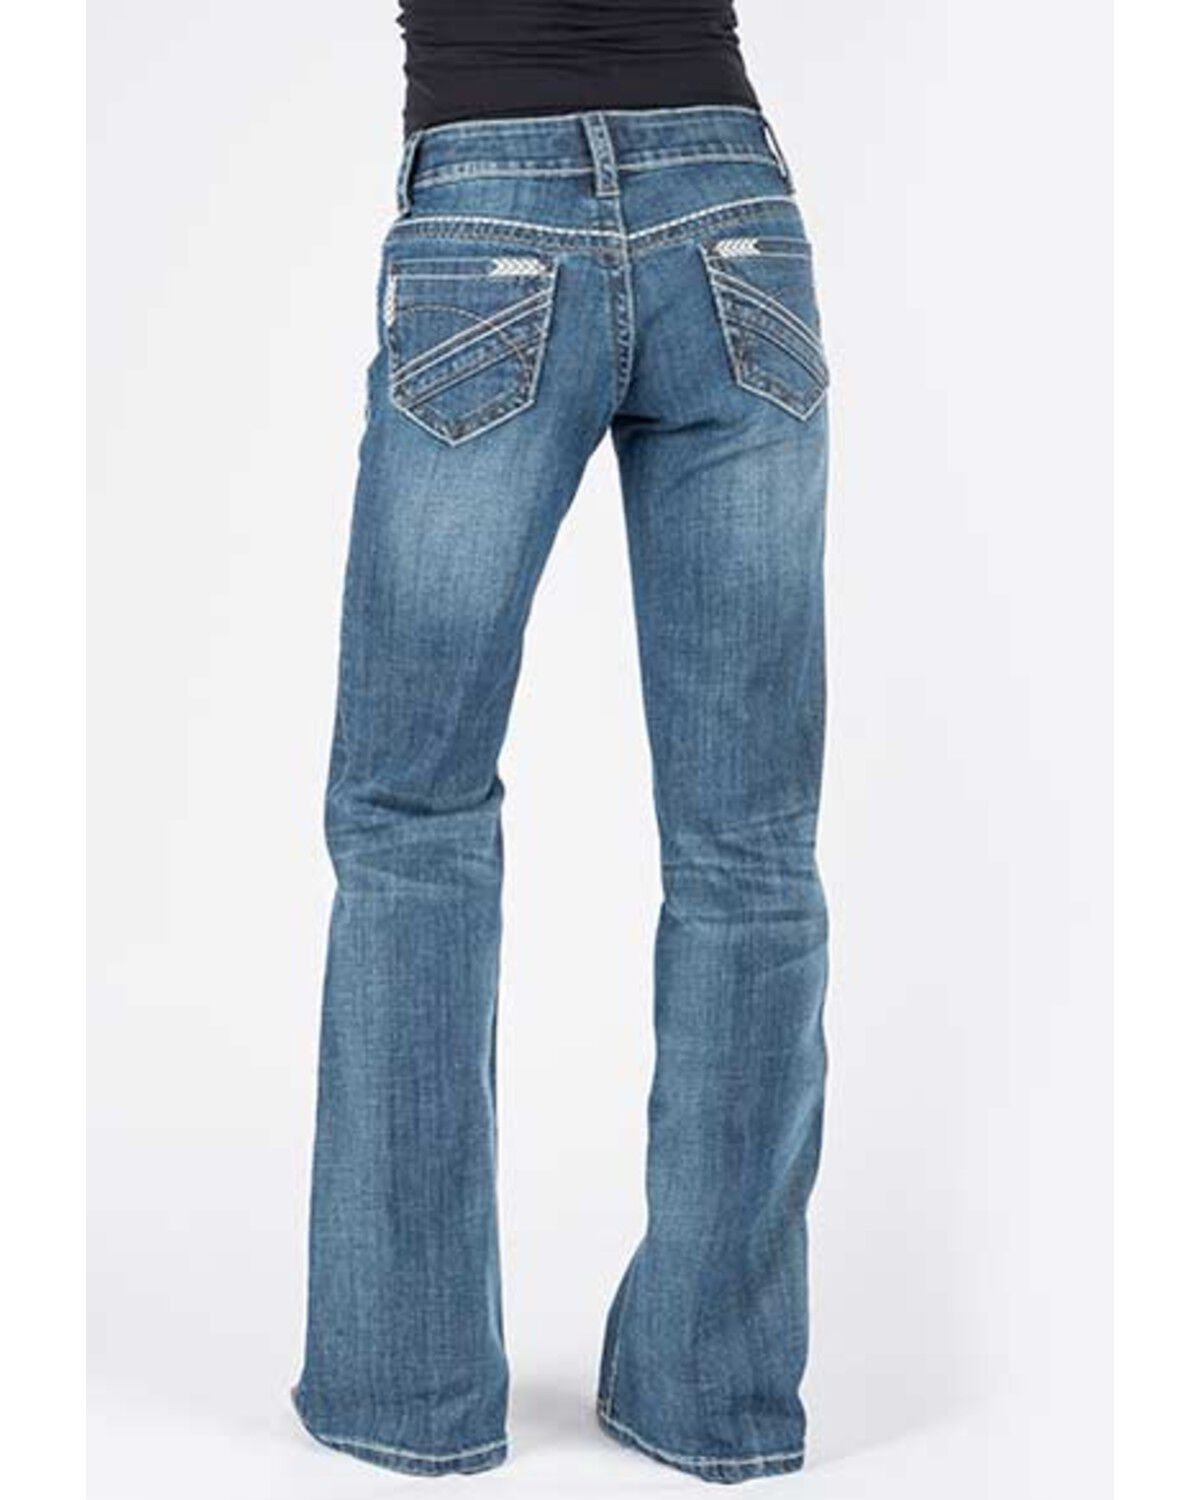 stetson city trouser jeans